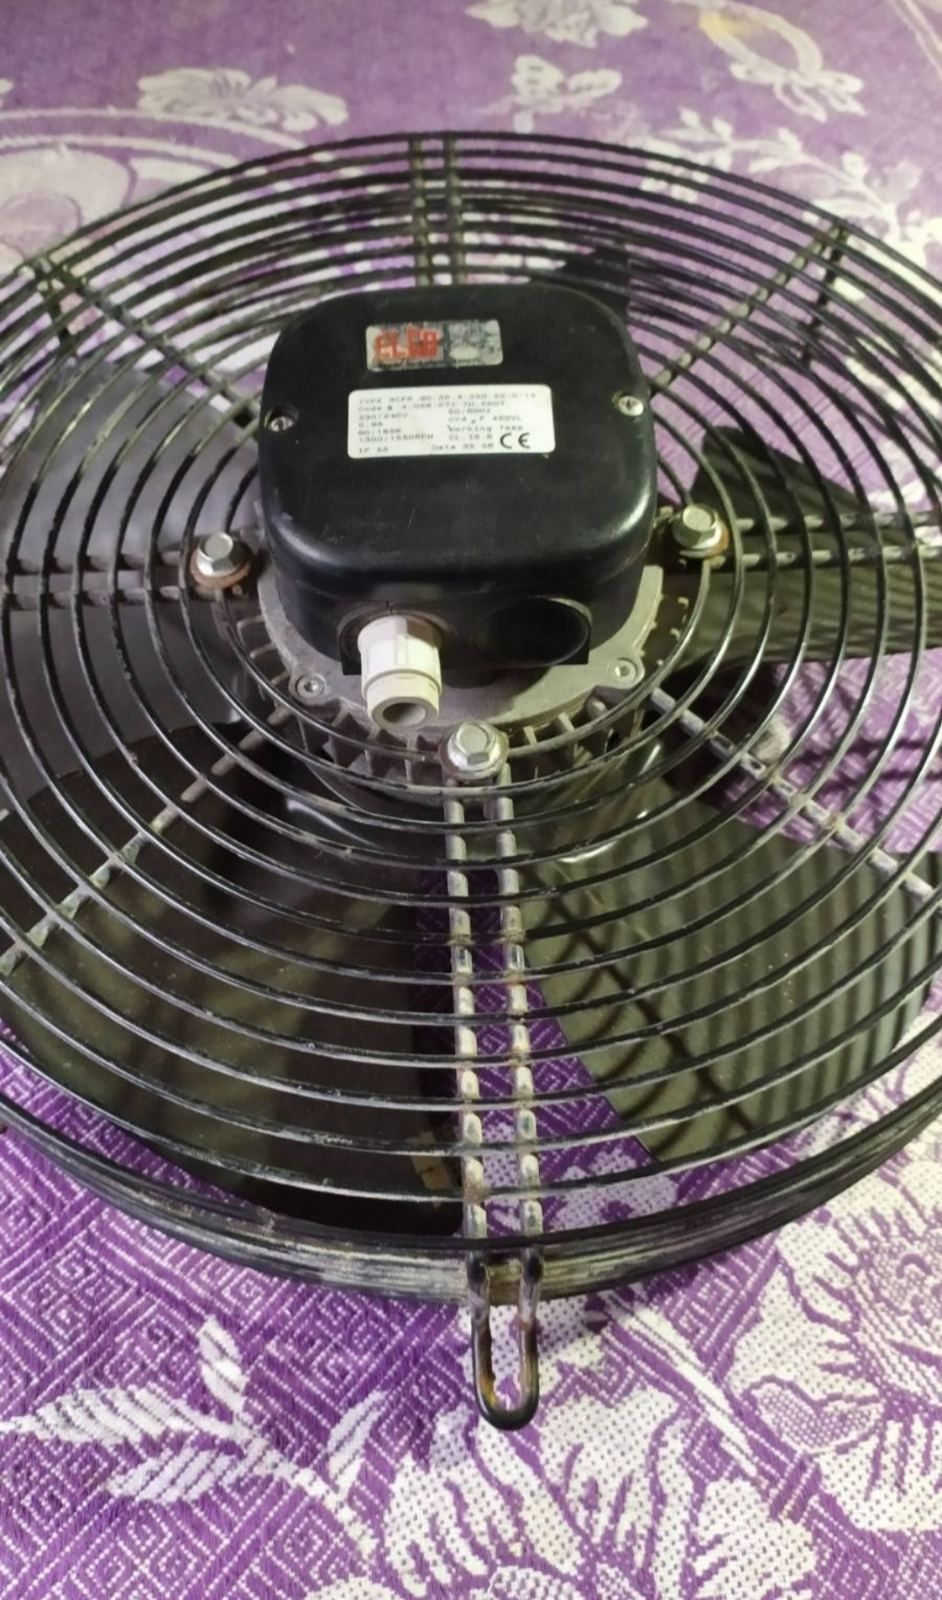 Вентилятор настенный осевой новый фирмы ELKO для вытяжки,обдува,охлаж.